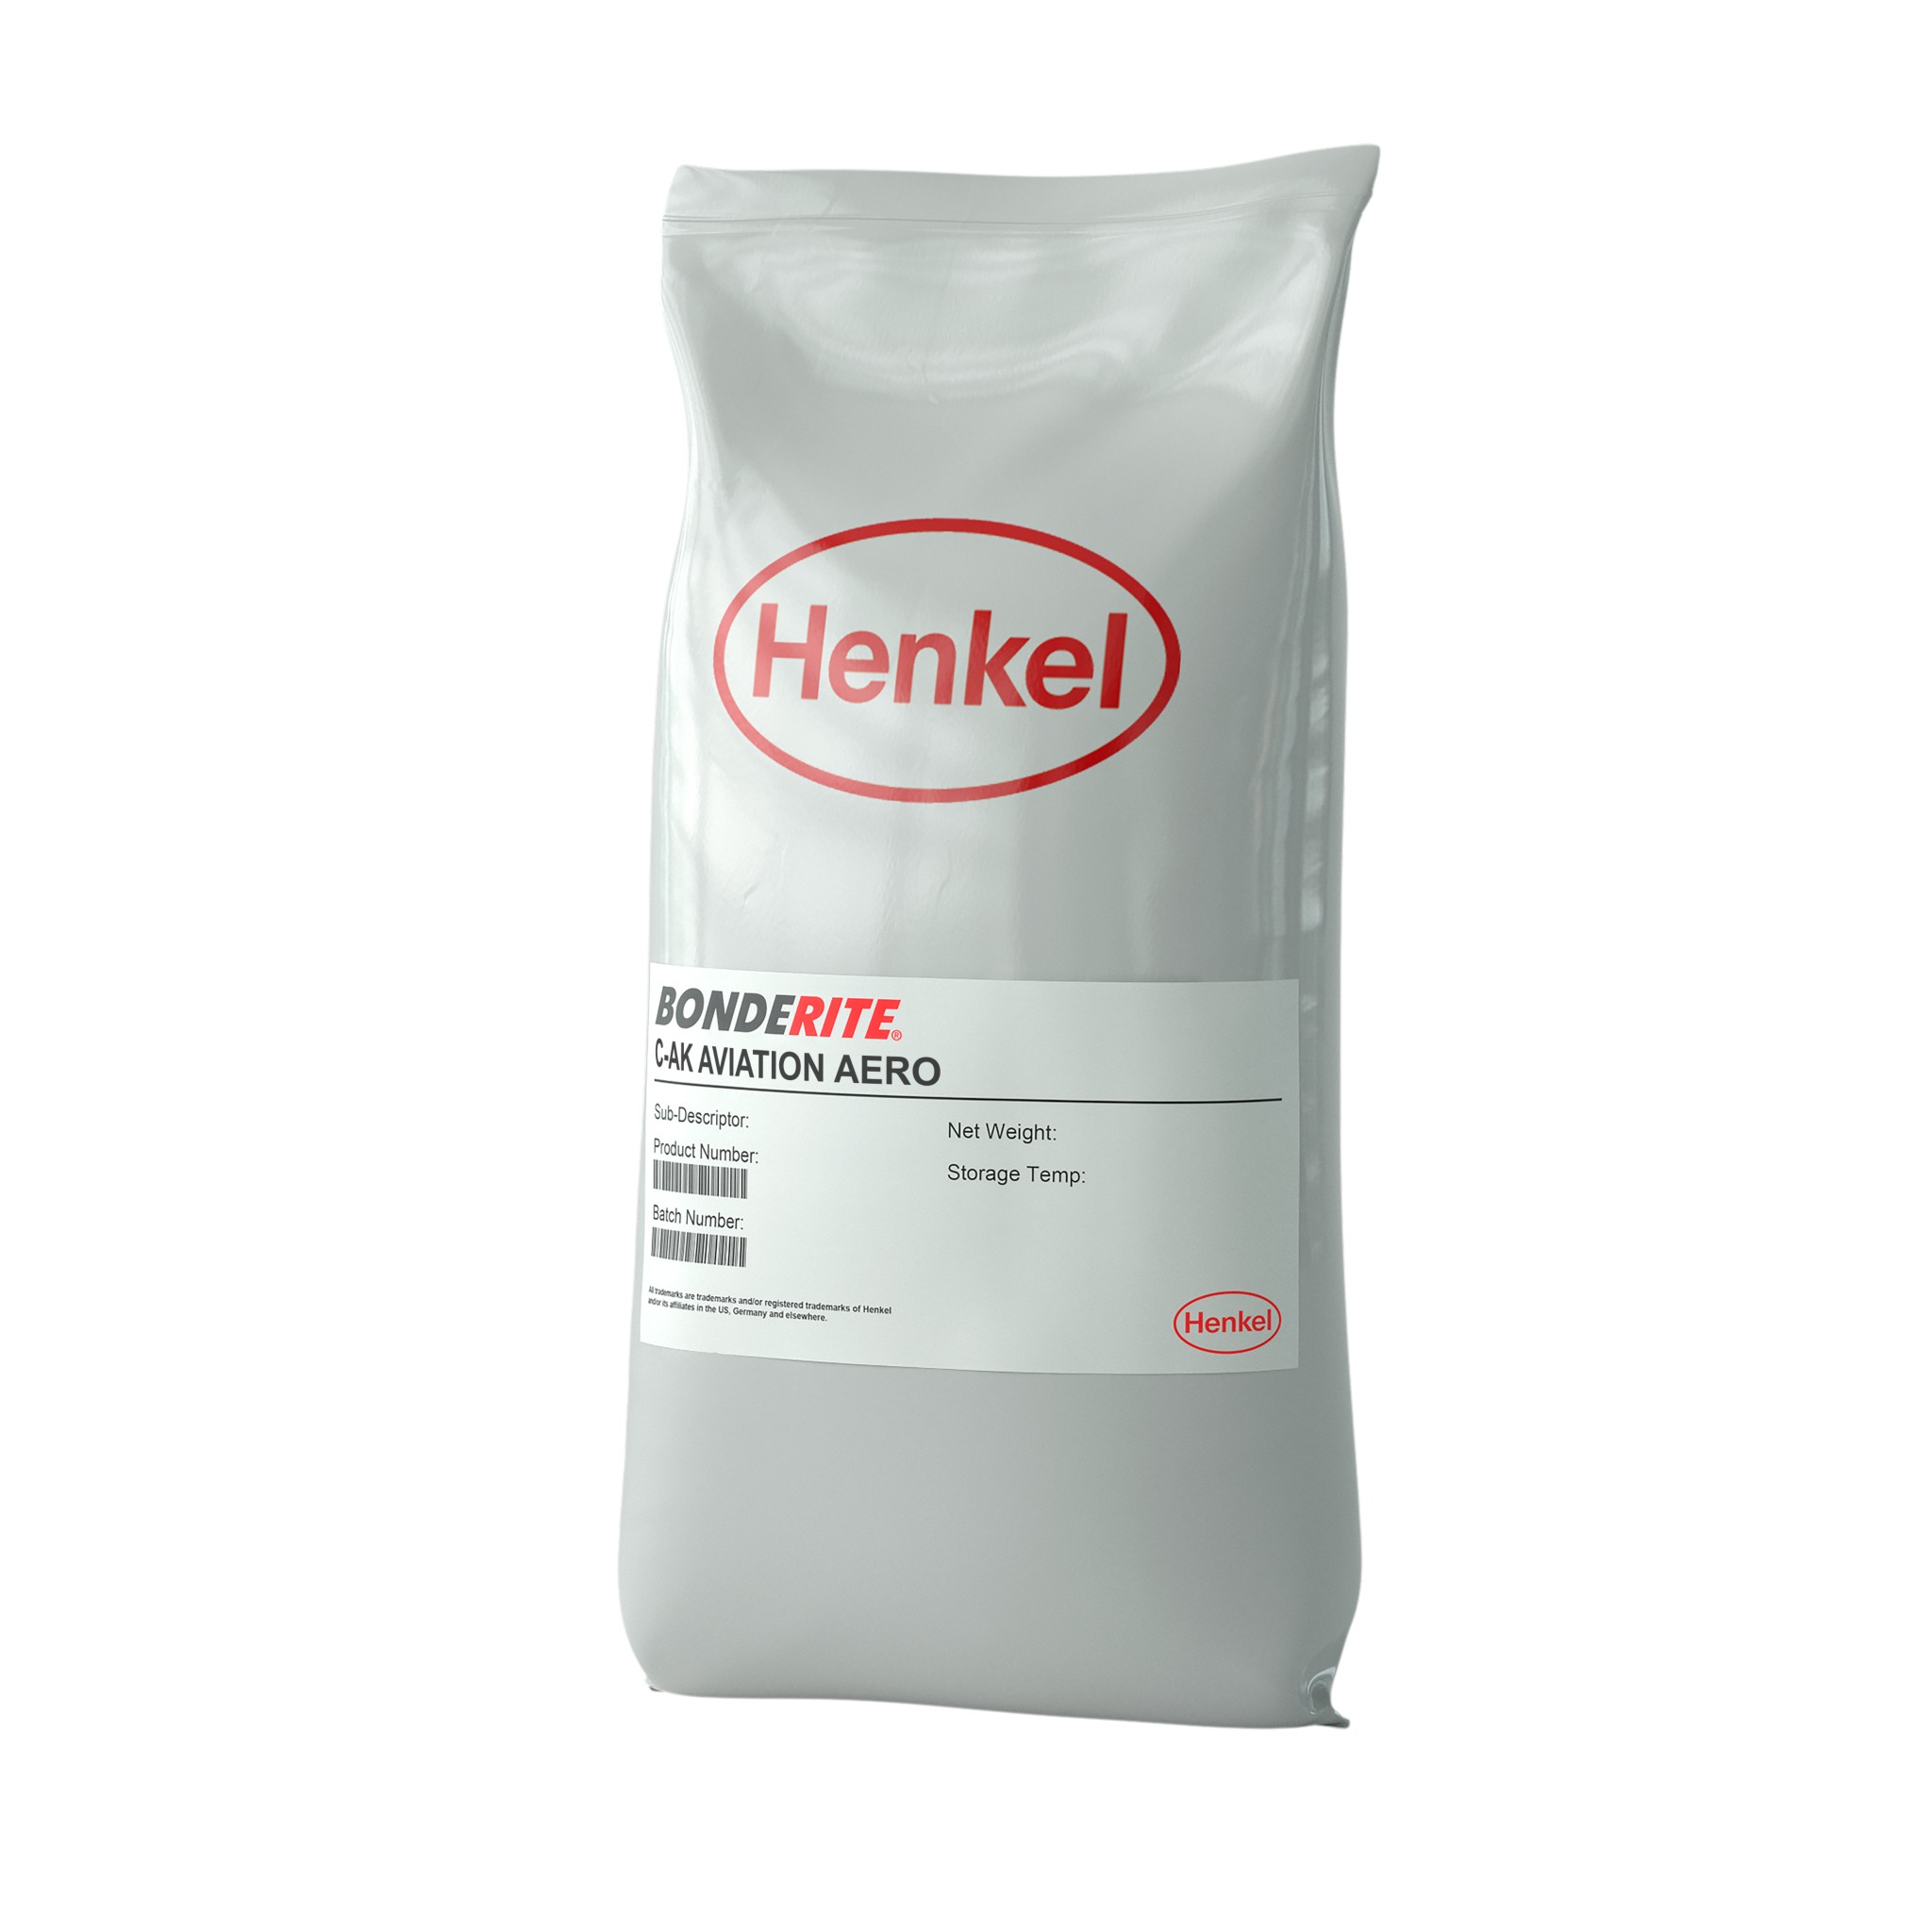 BONDERITE® C-AK AVIATION AERO - Henkel Adhesives